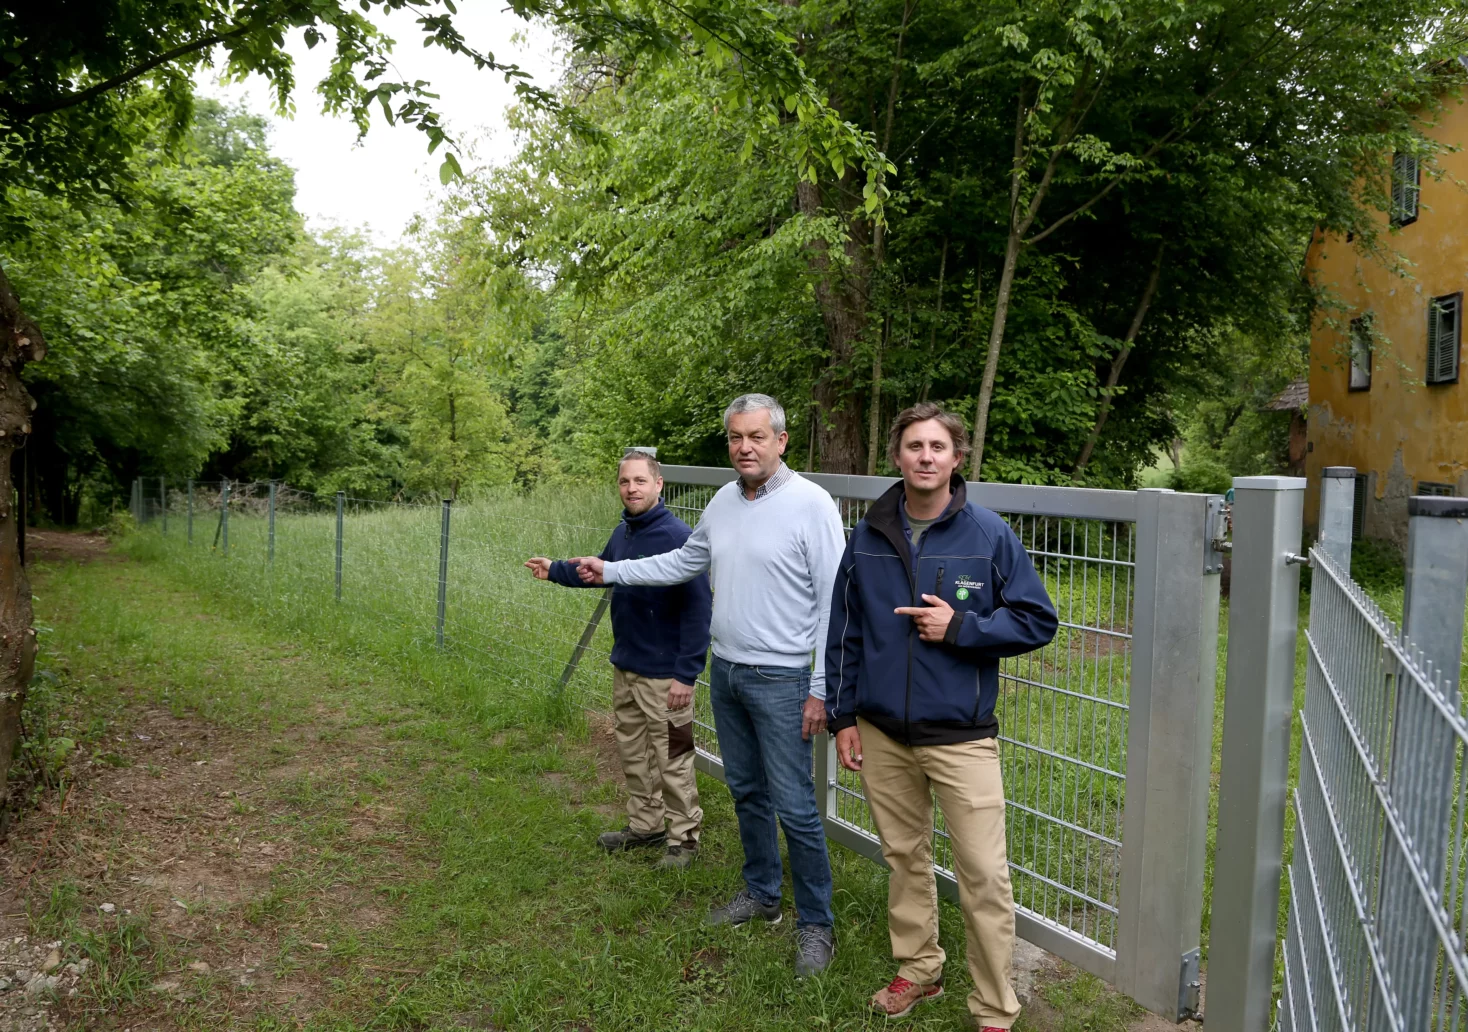 Bild auf 5min.at zeigt drei Personen, darunter Klagenfurter Stadtrat Max Habenicht, bei einem Weg im Wald stehen.